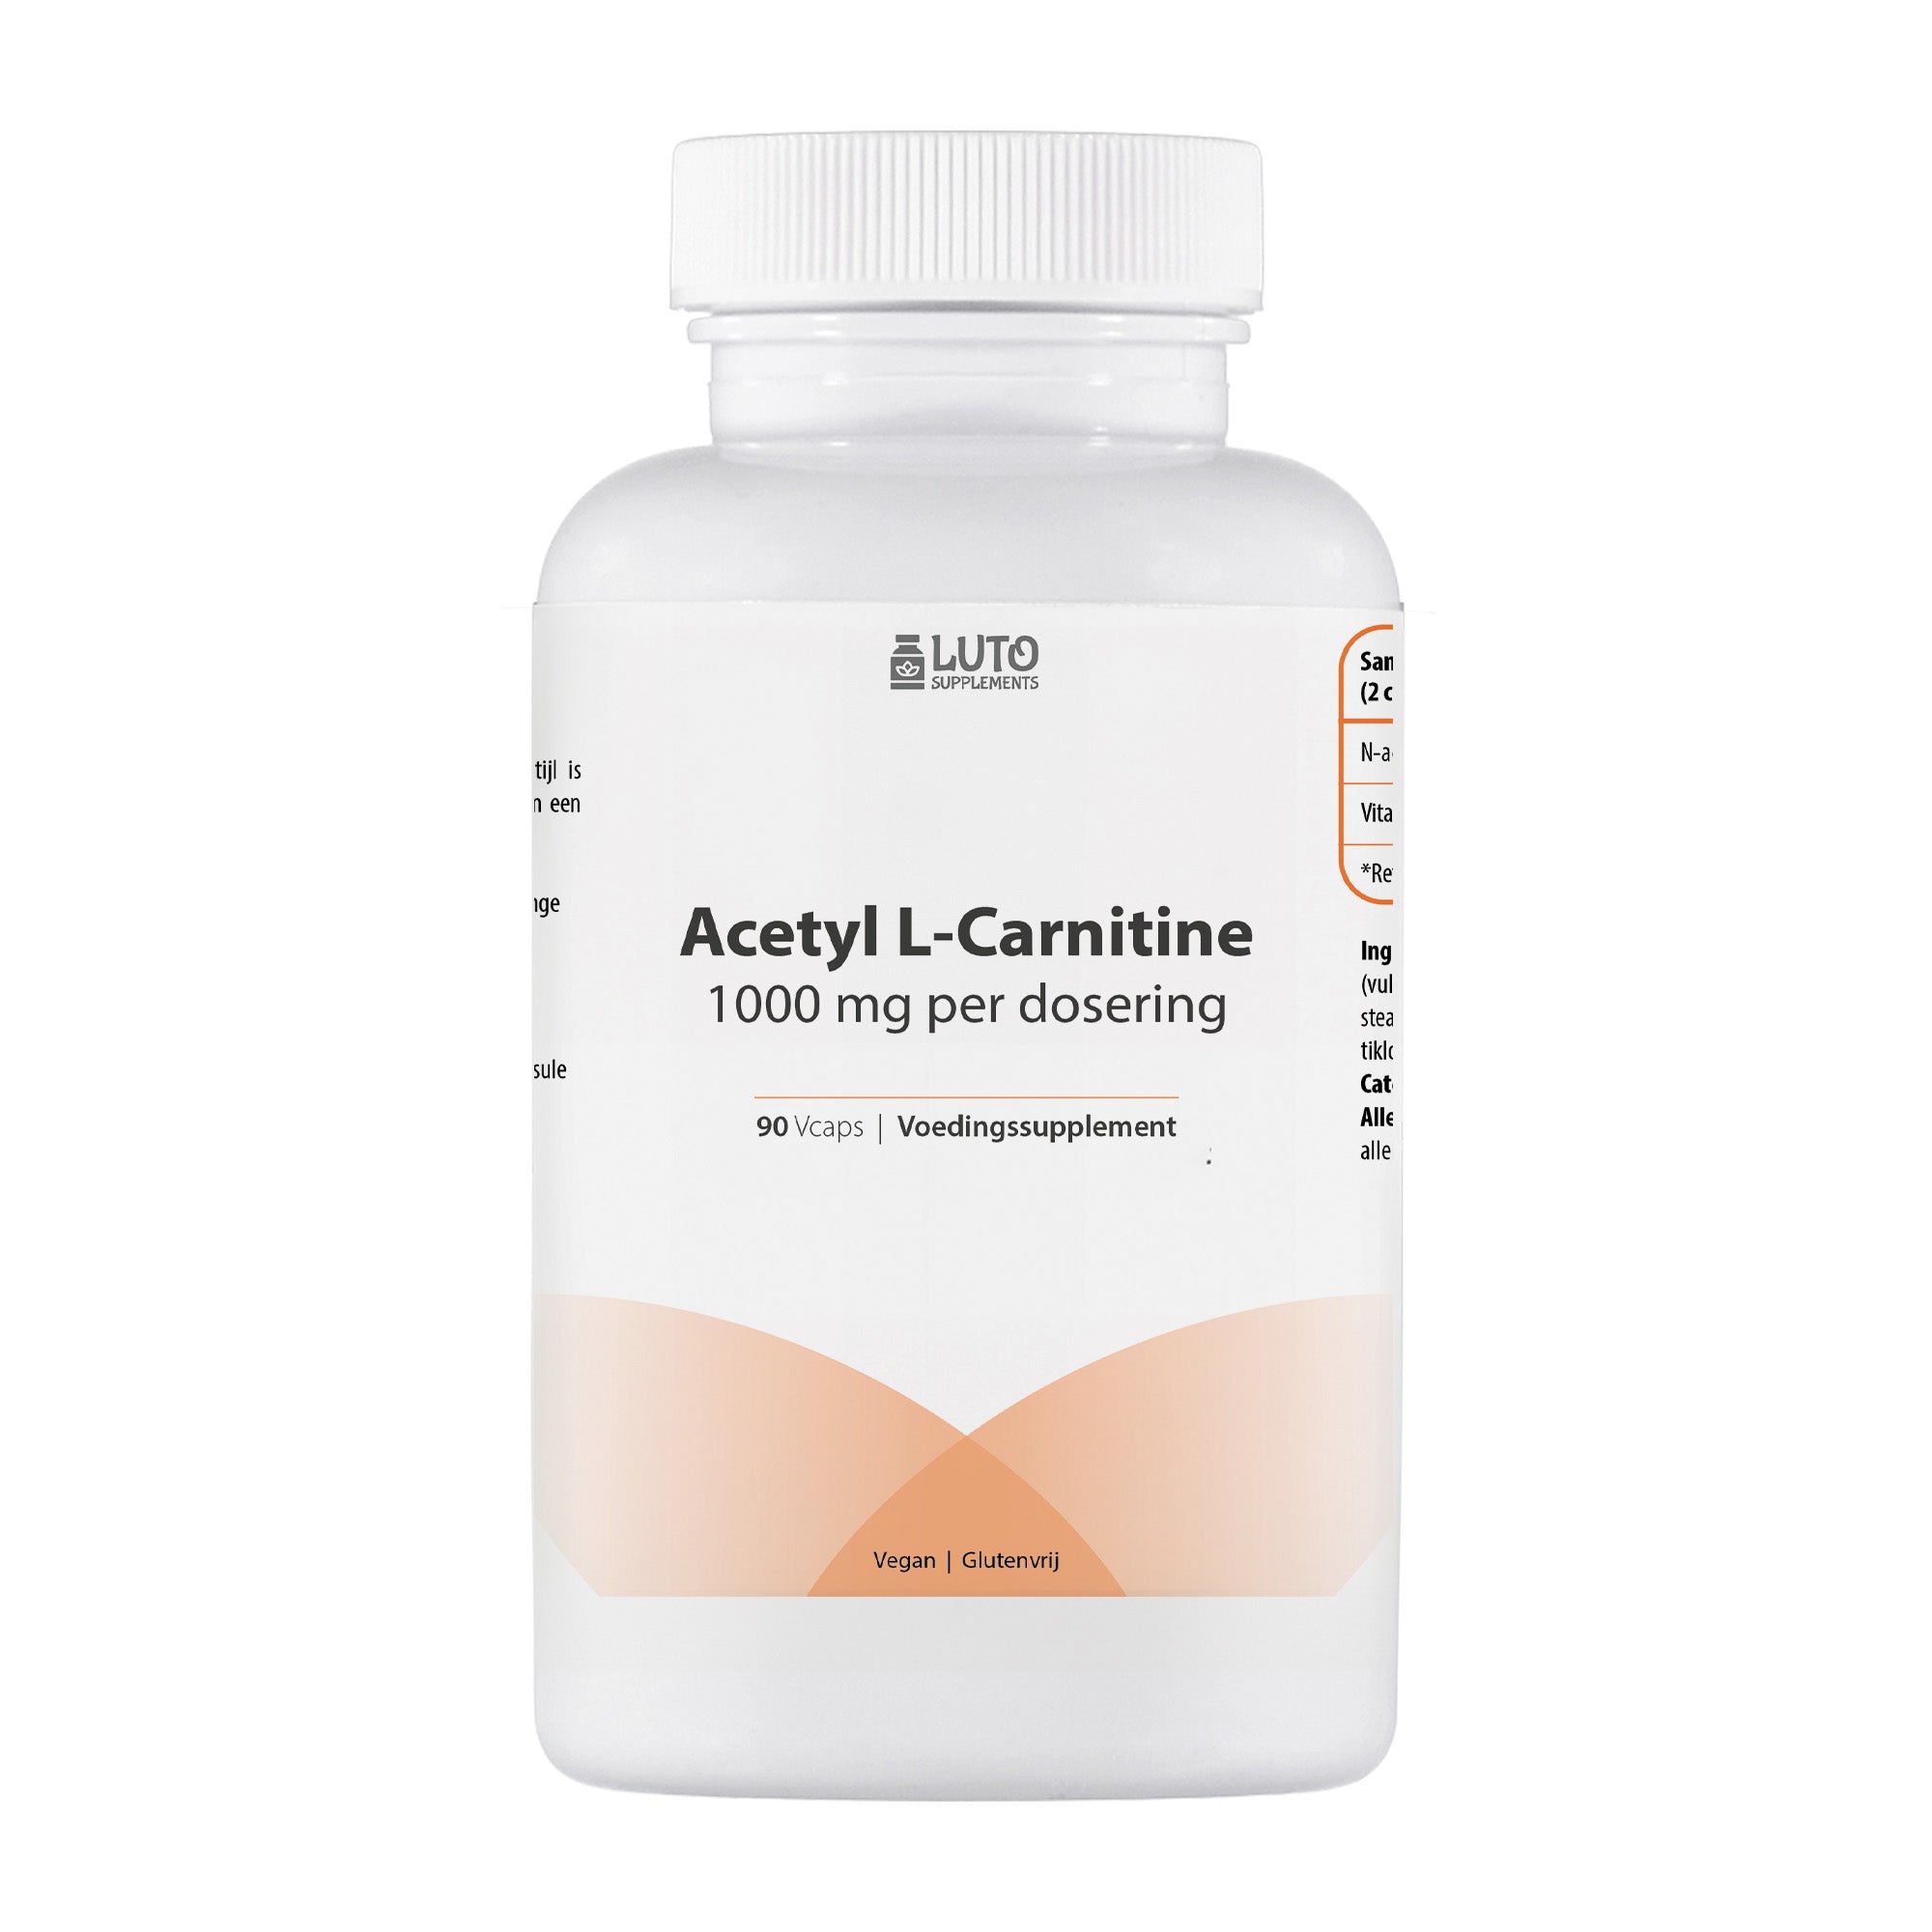 Luto Supplements | Acetyl L-Carnitine | 1000 mg per dagdosering | Hoog gedoseerd | Bio-actieve vorm van carnitine | vegan | 90 Vcaps